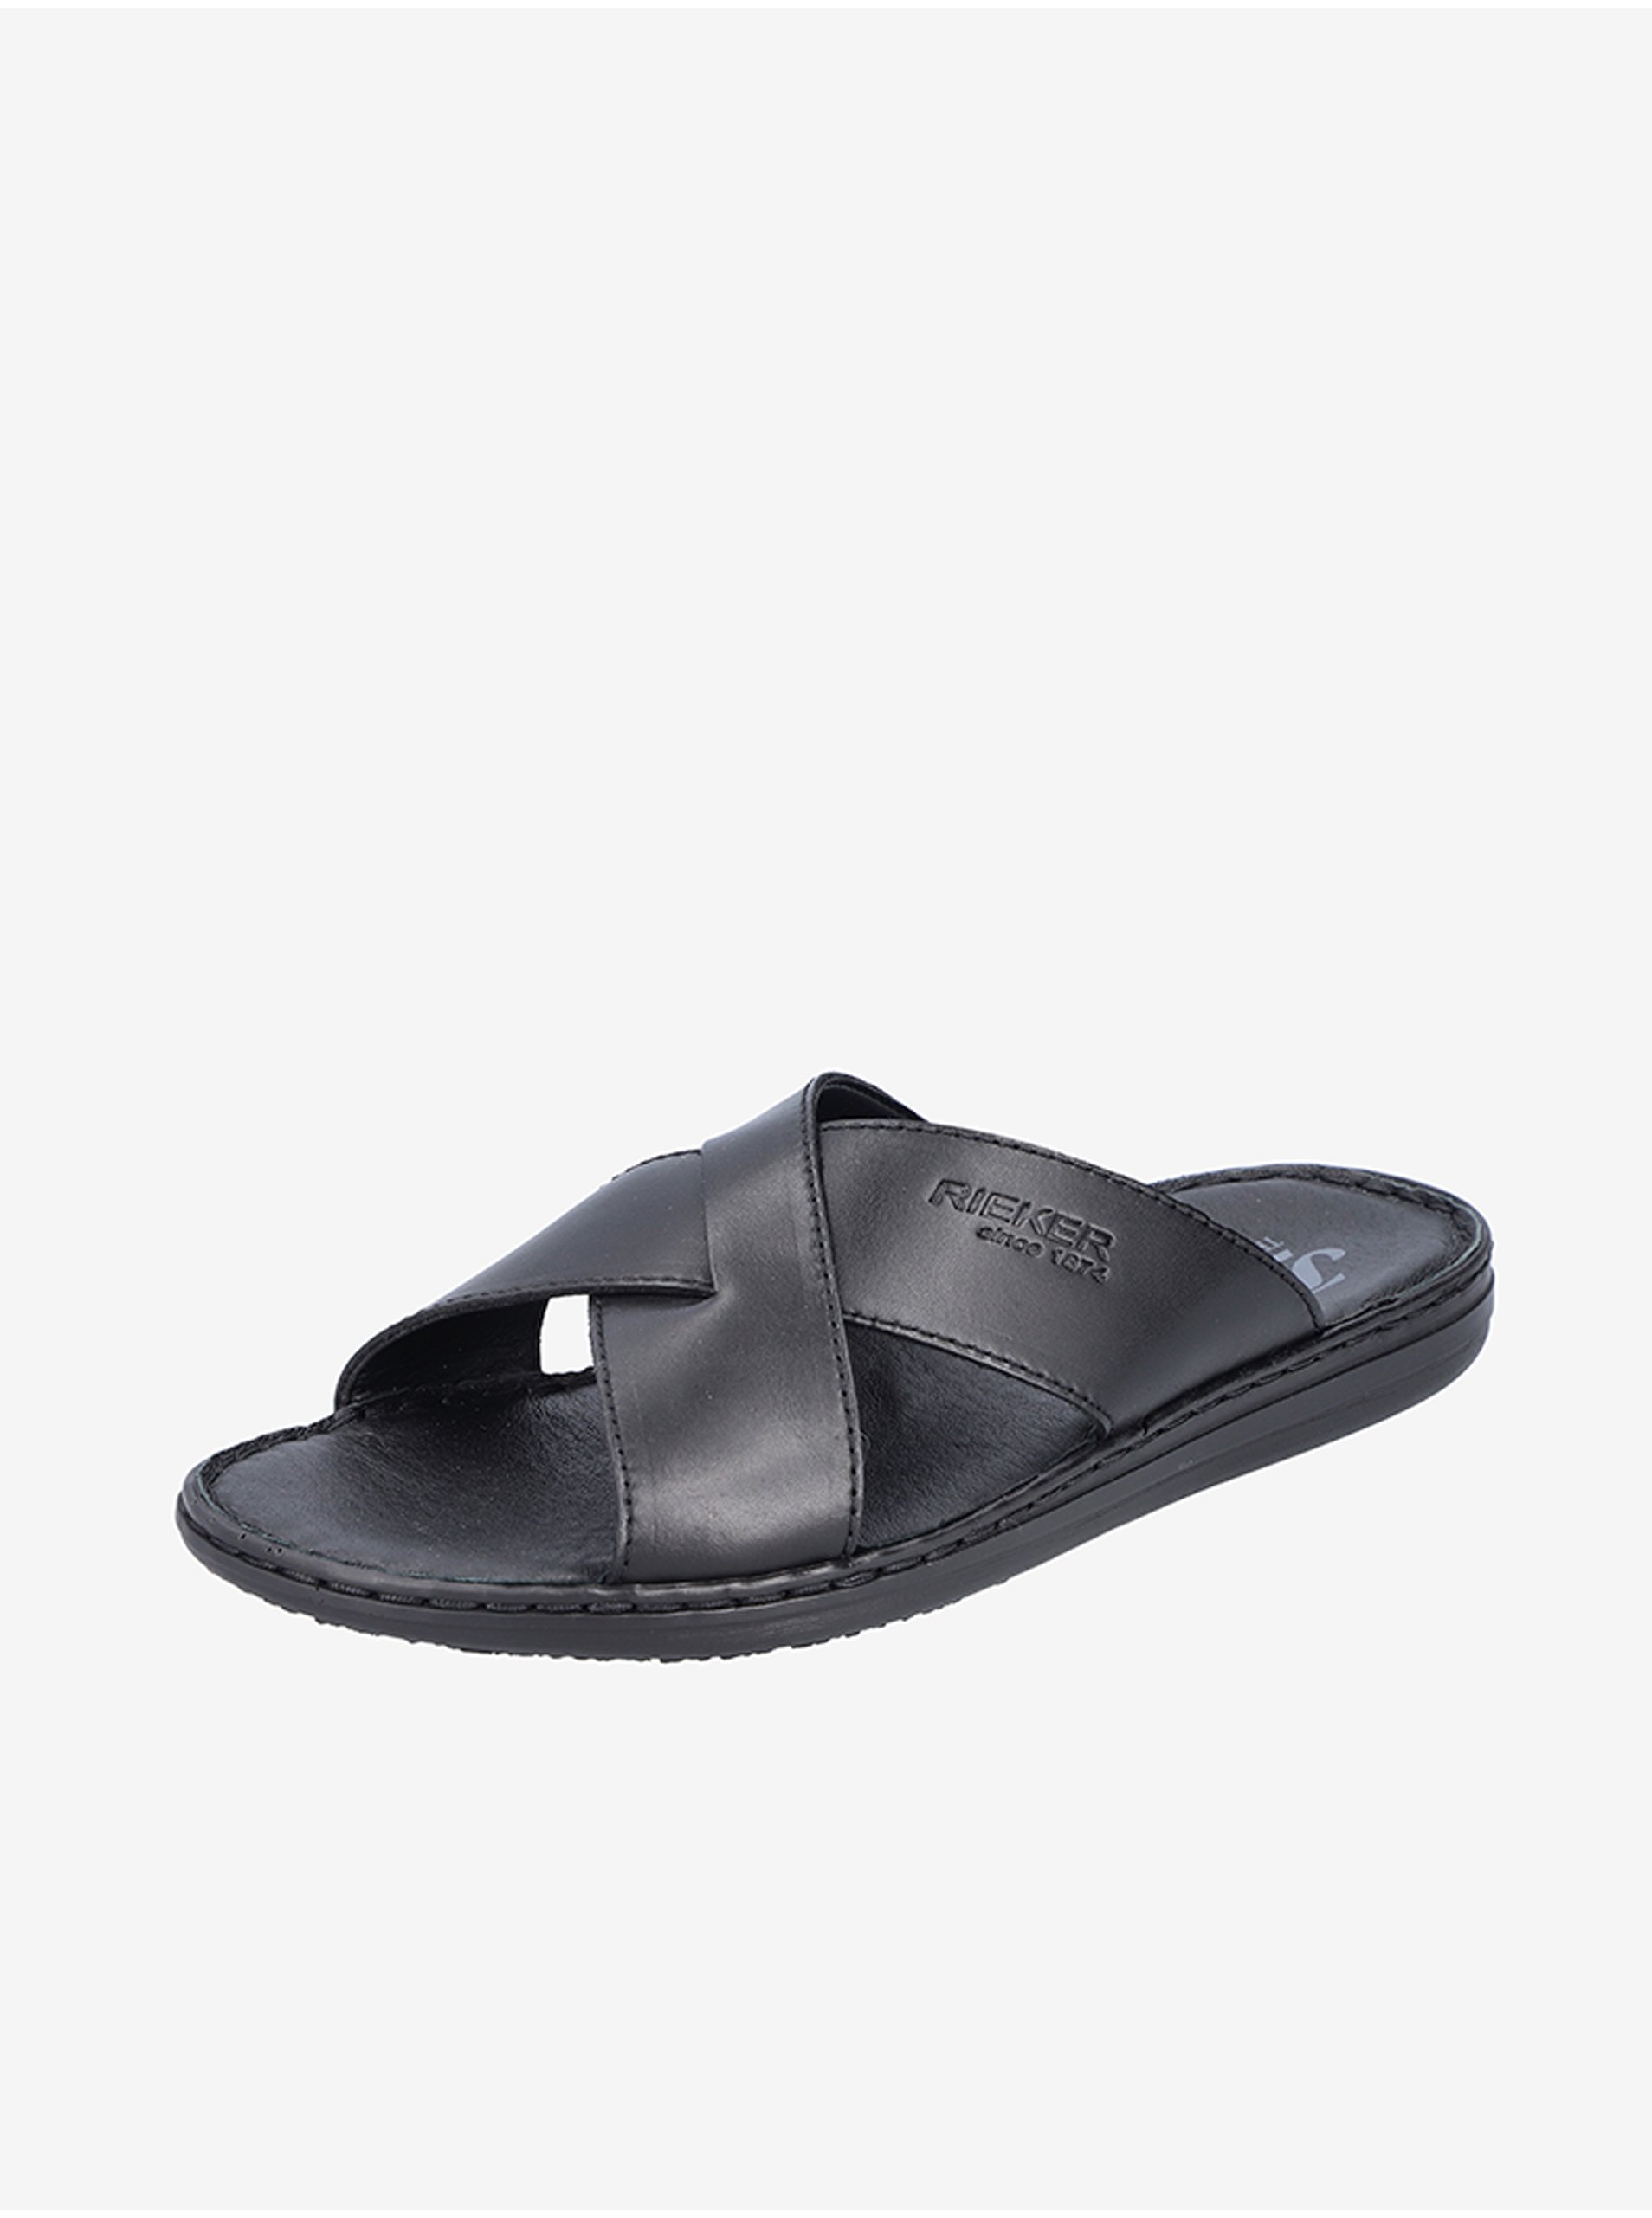 E-shop Sandále, papuče pre mužov Rieker - čierna